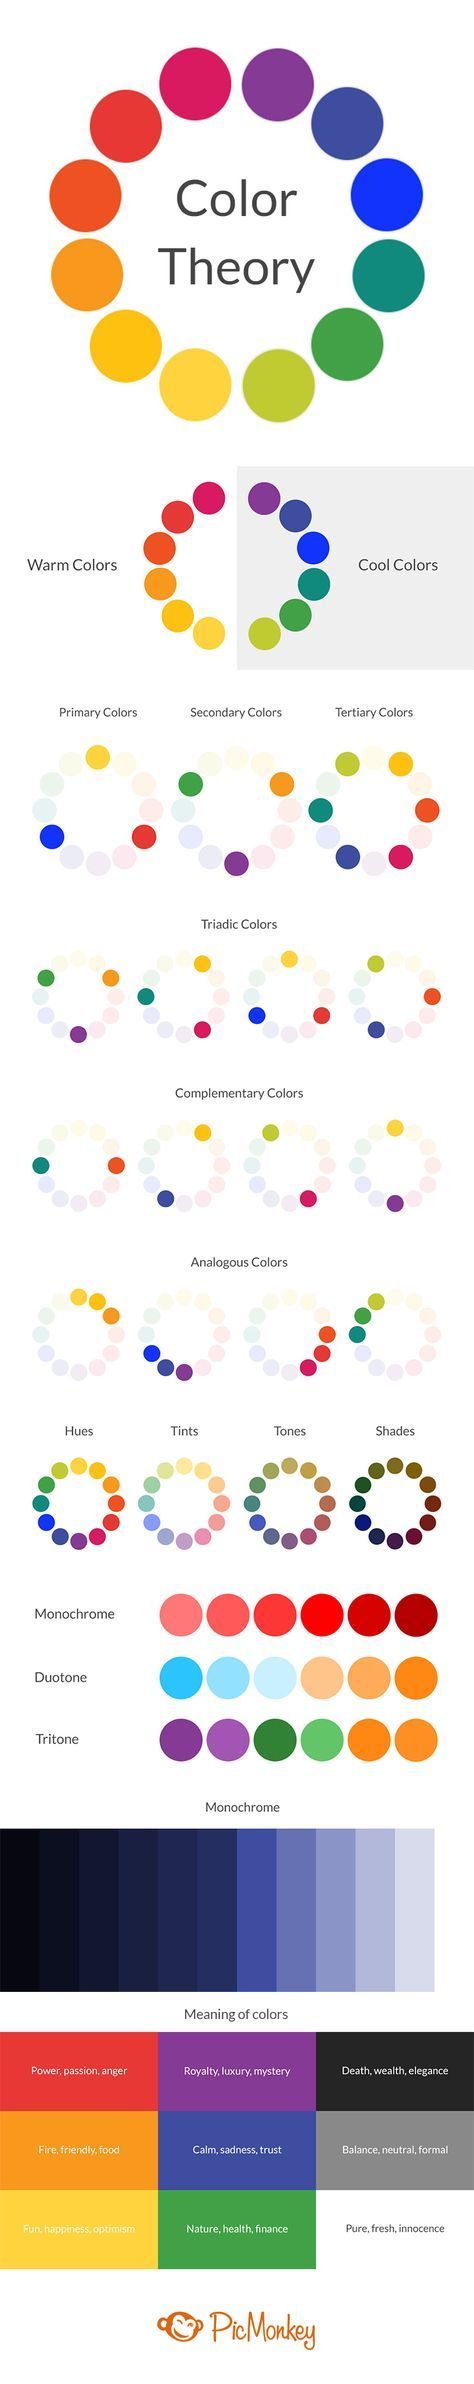 kolory w grafice